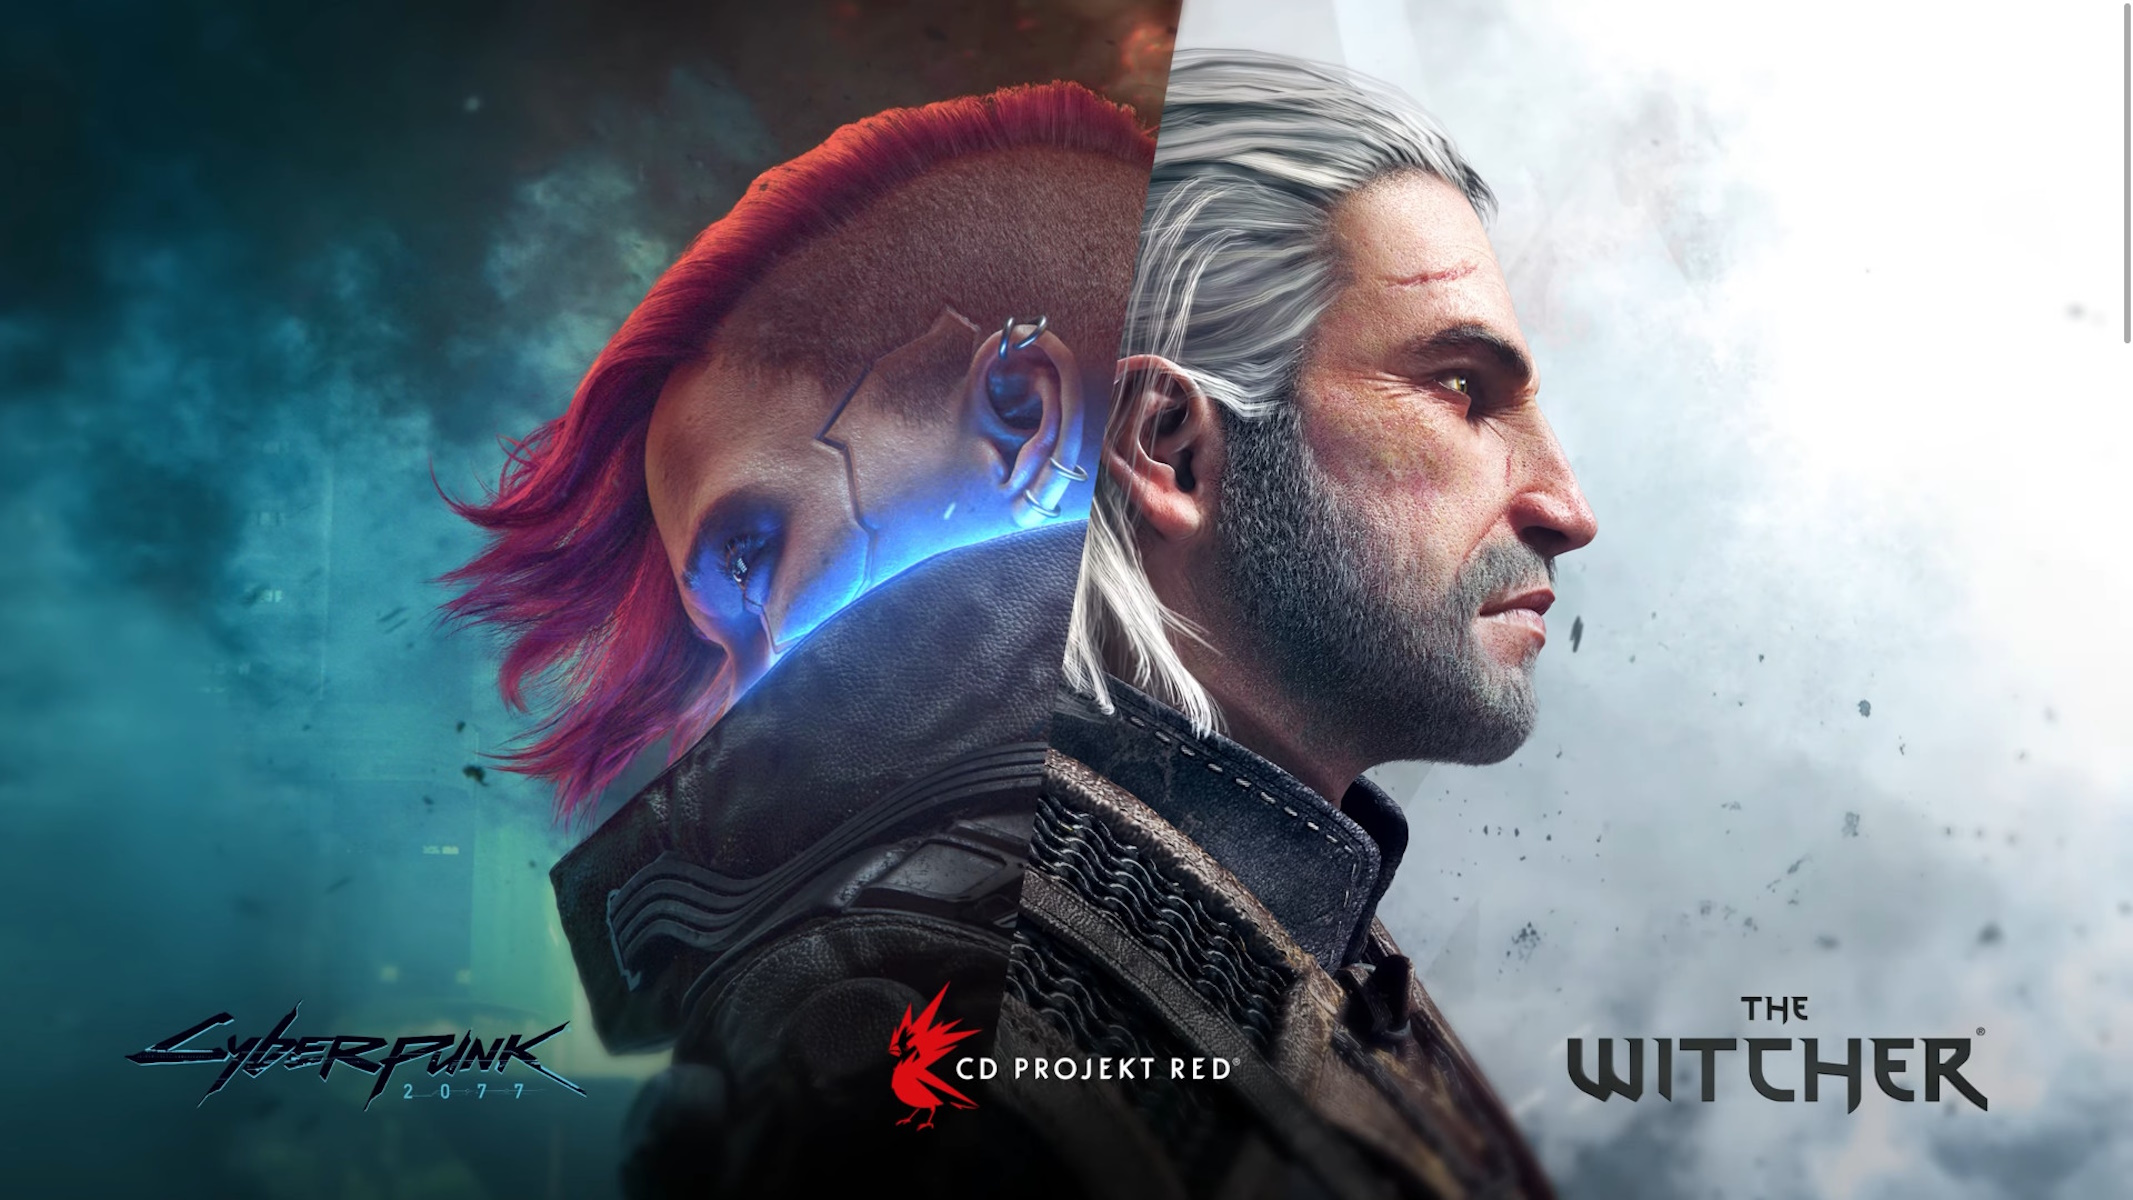 Cyberpunk 2077 e The Witcher 3 sviluppati da CD Projekt RED